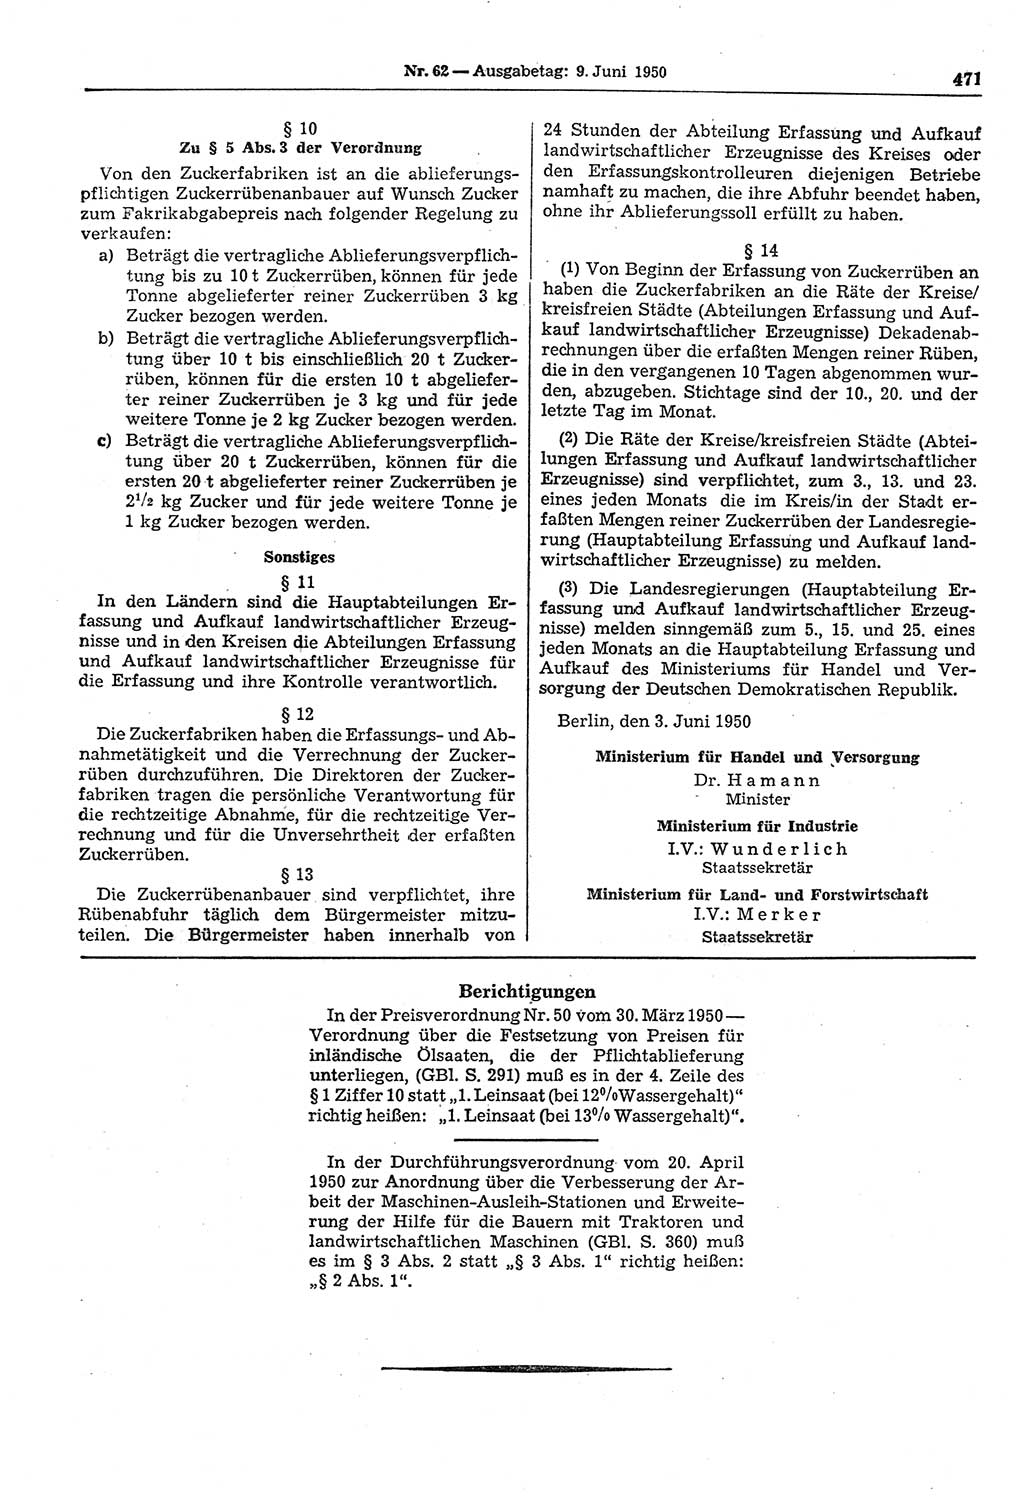 Gesetzblatt (GBl.) der Deutschen Demokratischen Republik (DDR) 1950, Seite 471 (GBl. DDR 1950, S. 471)